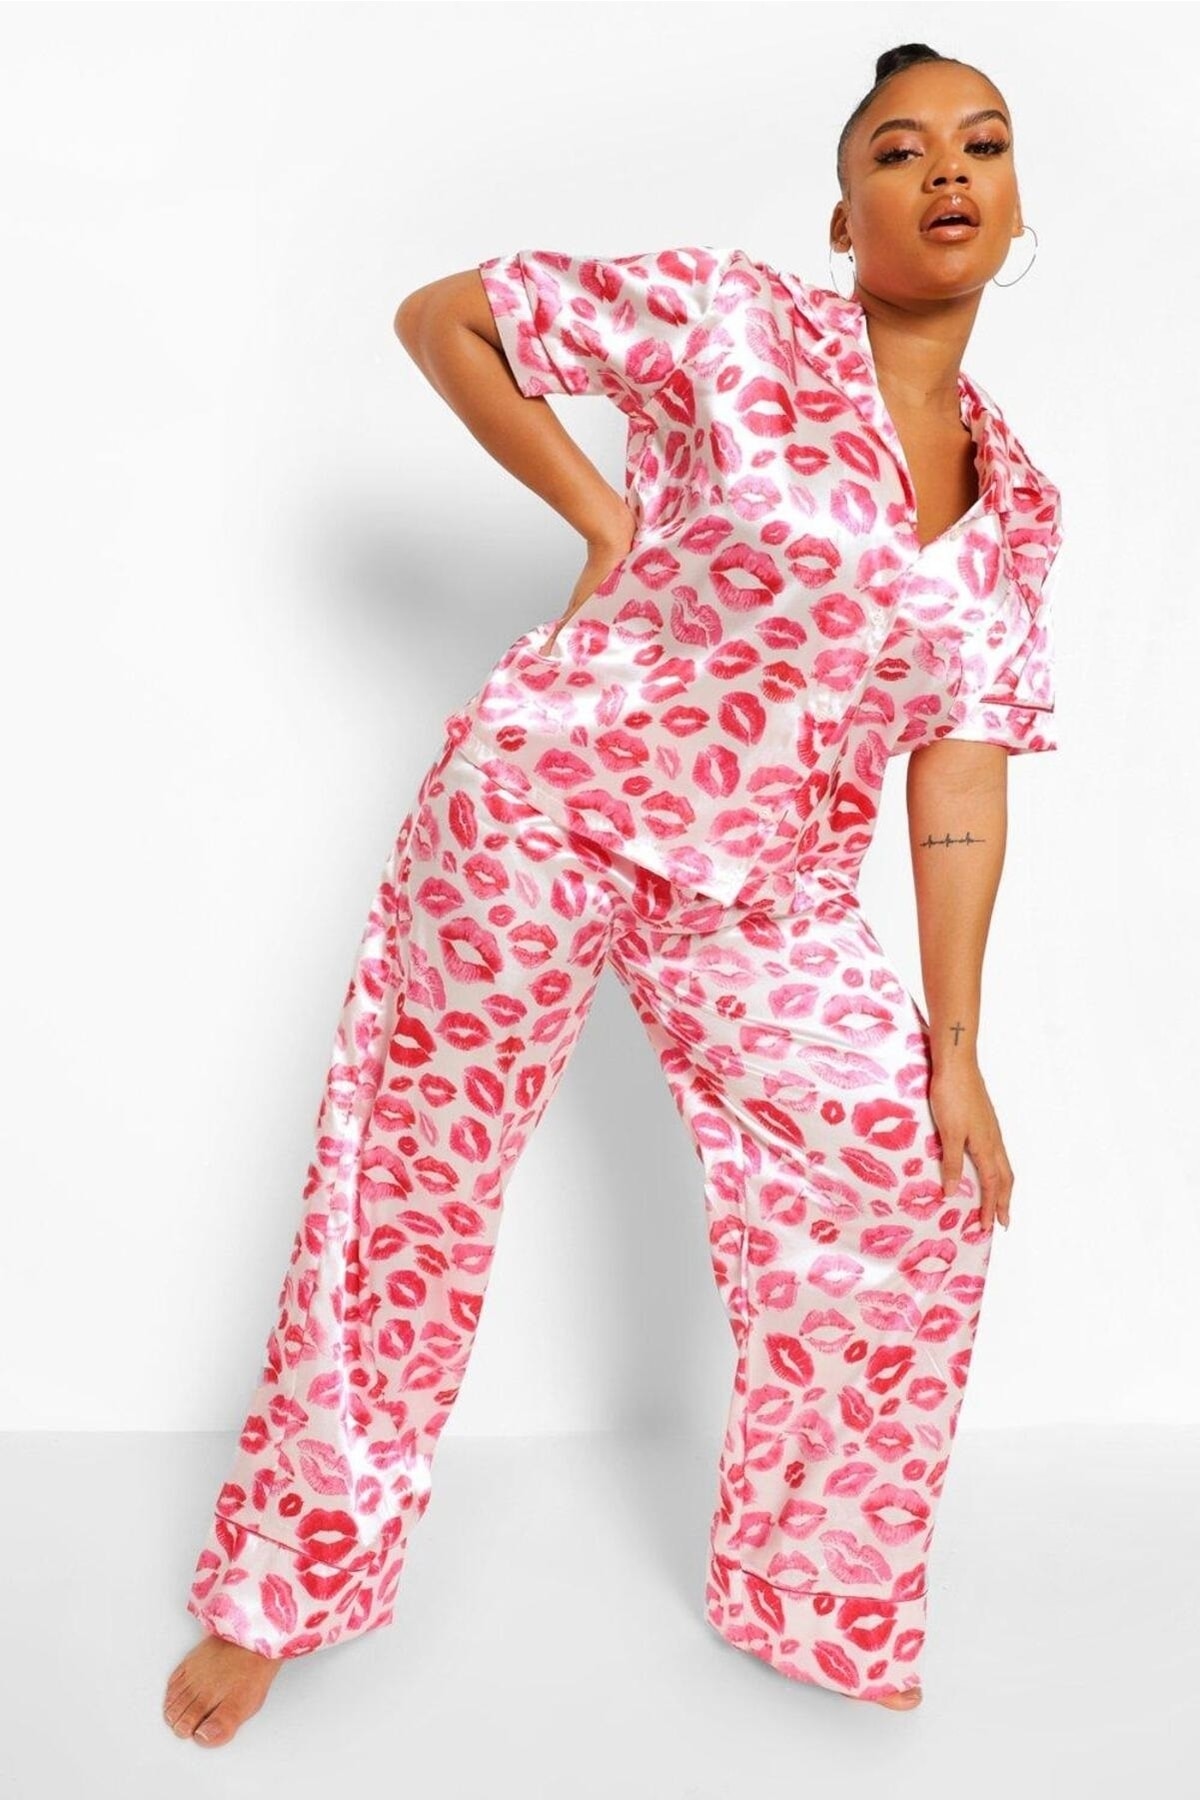 For Big Trend Kadın Büyük Beden Dudak Baskılı Yakalı Düğmeli Maskeli Alt Bel Lastik Saten Pijama Takım